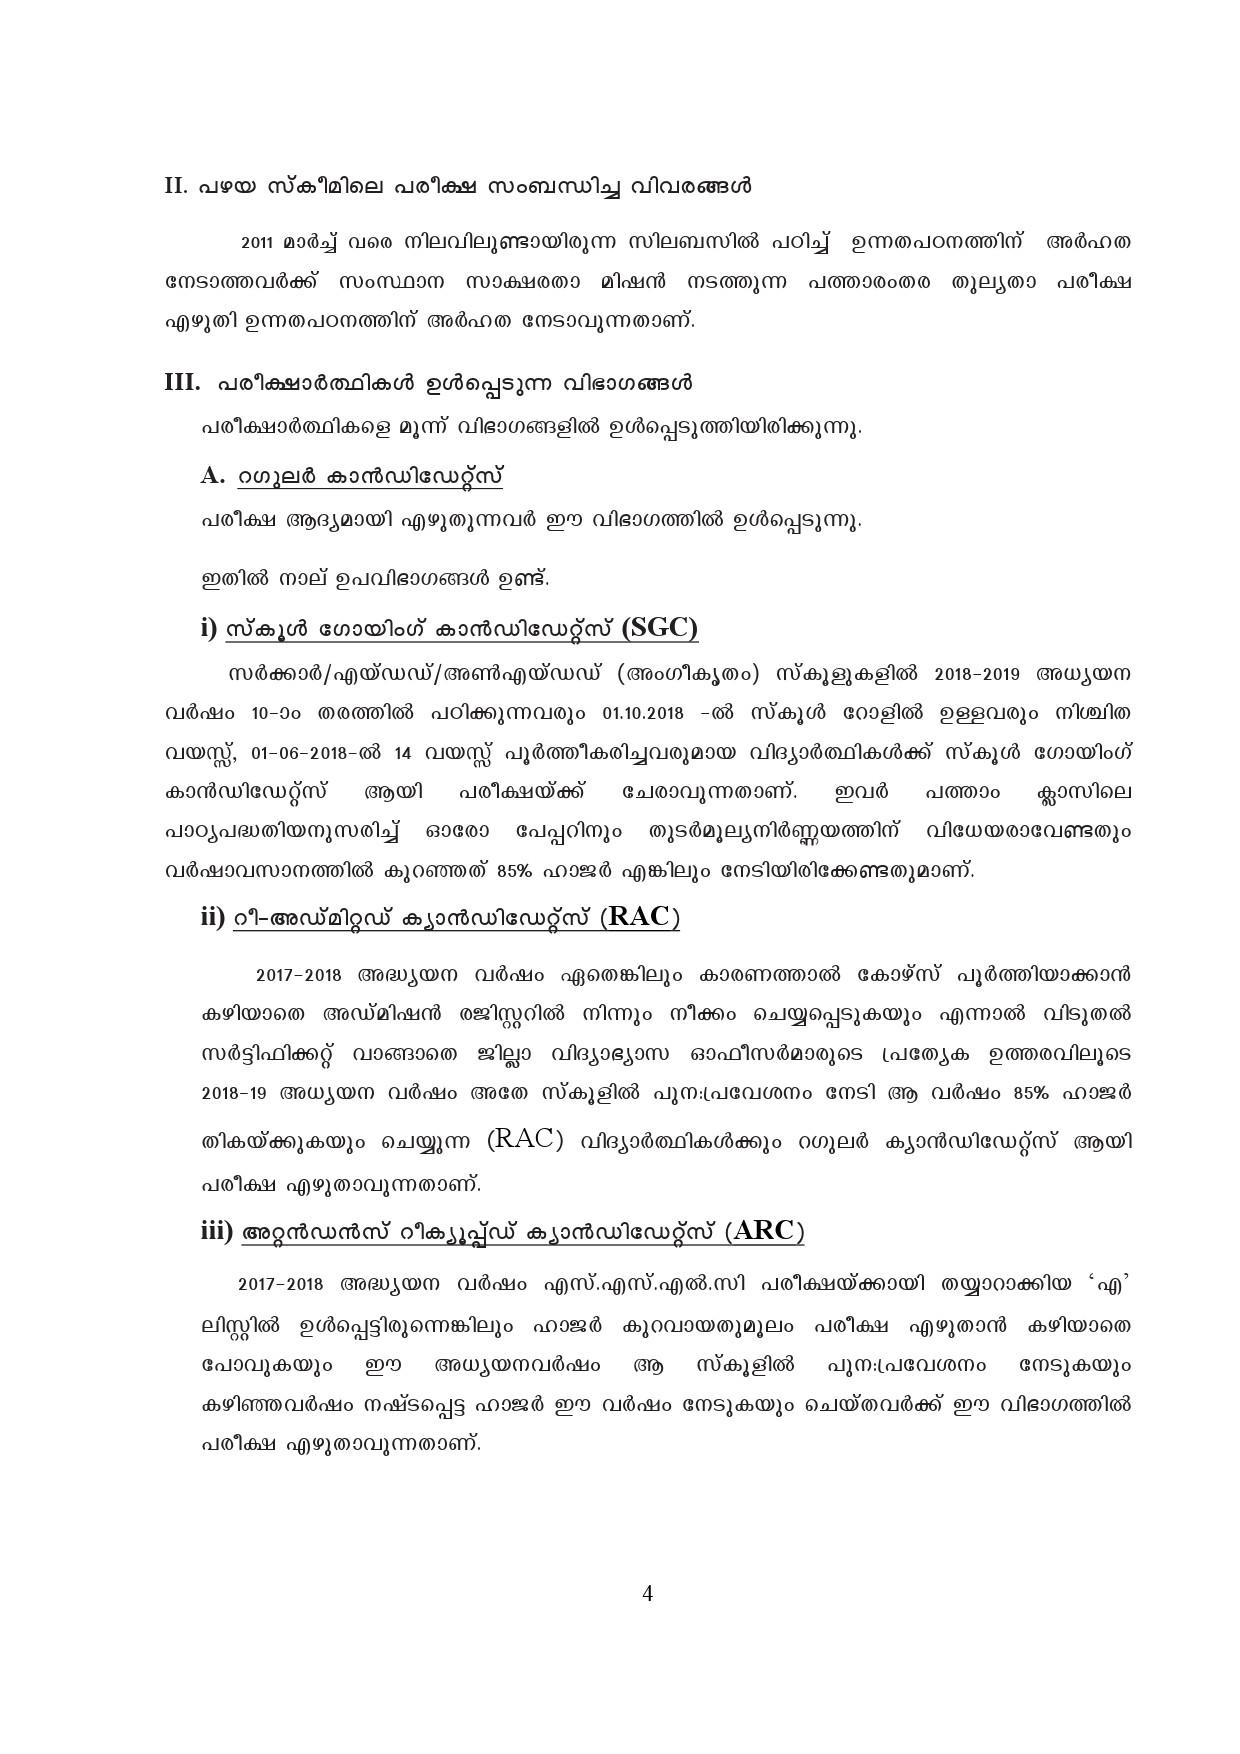 Kerala SSLC Exam Result 2019 - Notification Image 4